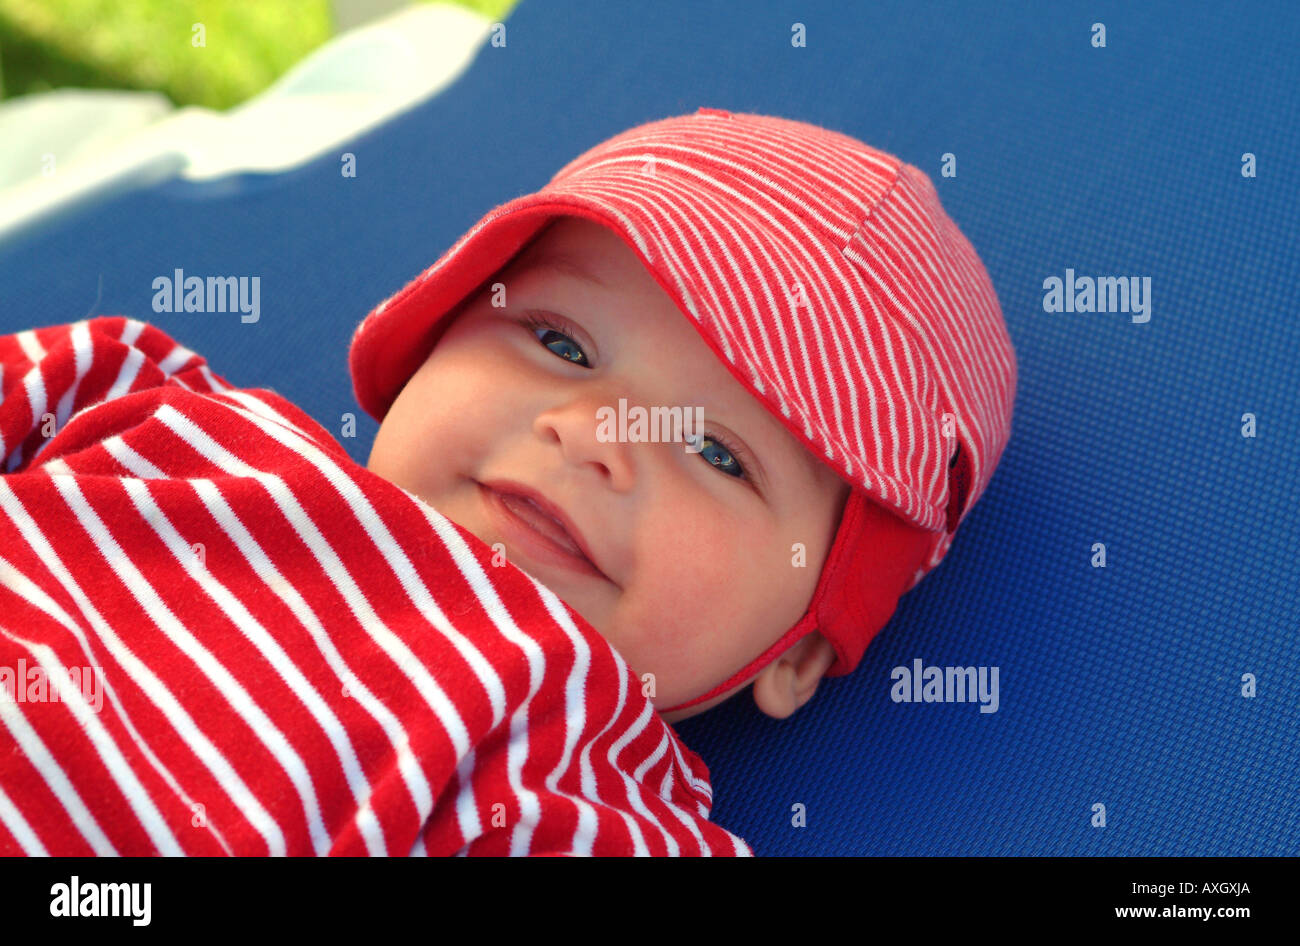 confident 6 months old Baby with hat closeup zufriedenes 6 Monate altes Baby mit Mütze Stock Photo